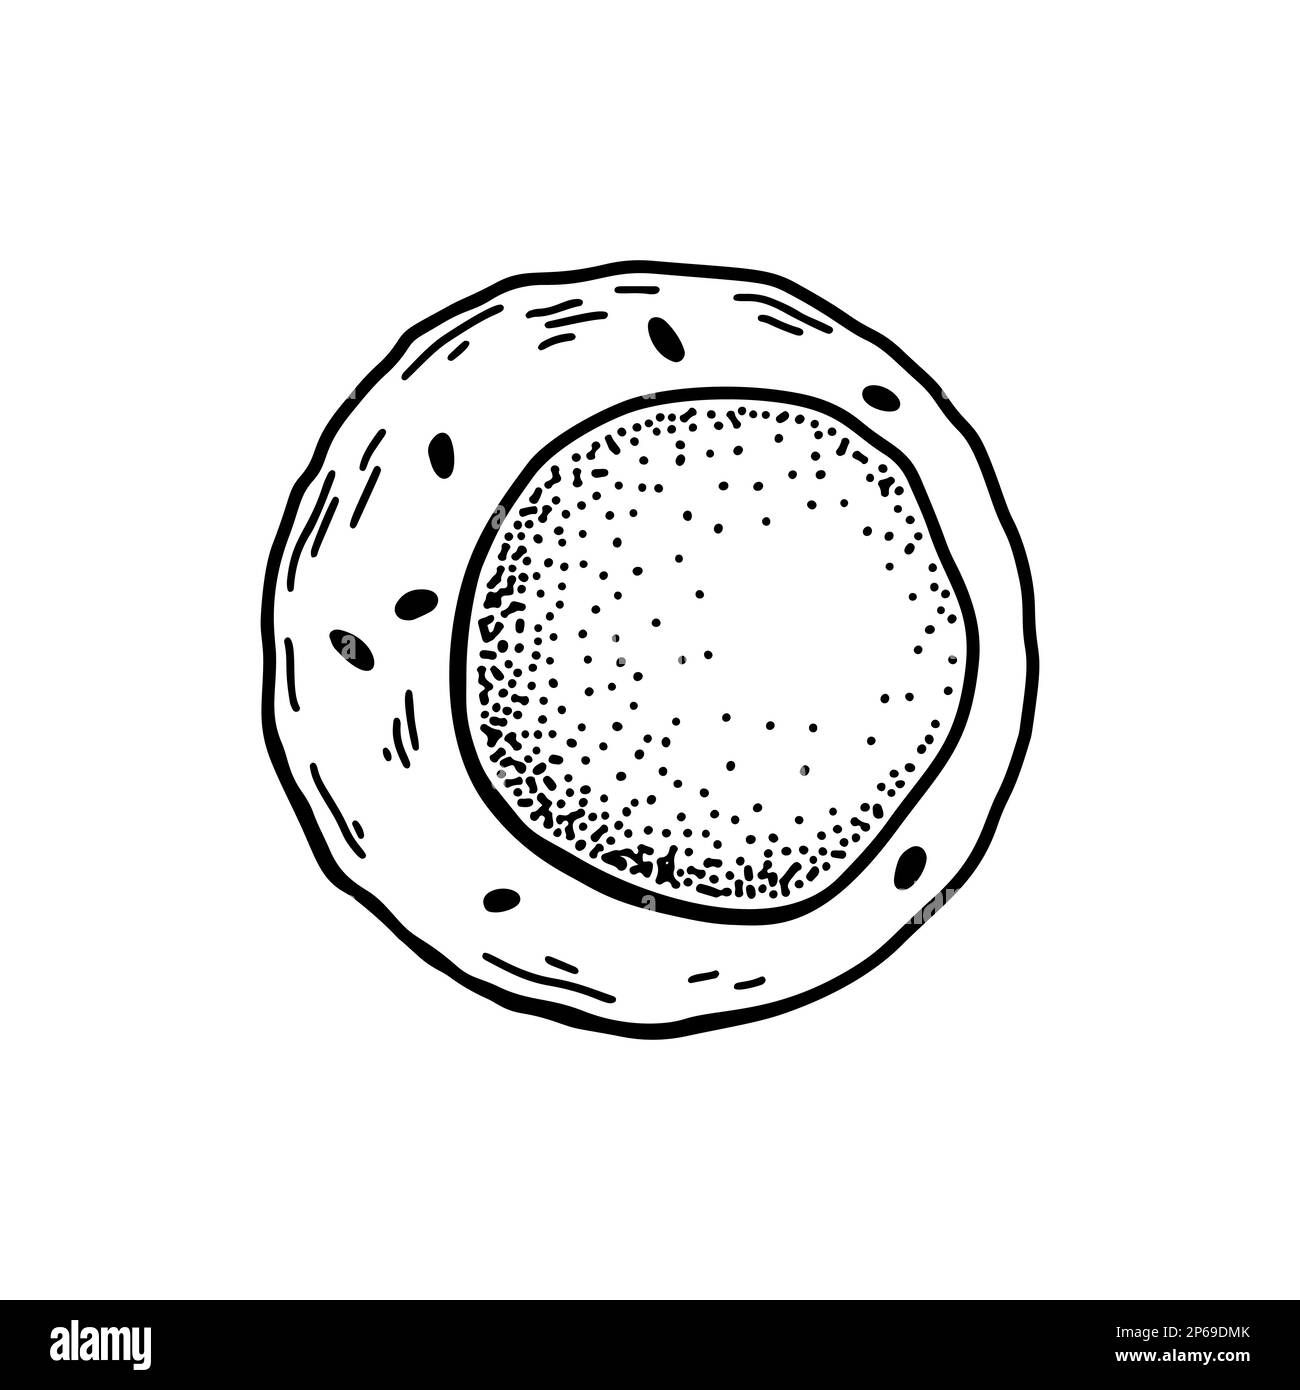 Cellule souche de sang myéloïde isolée sur fond blanc. Illustration de vecteur de microbiologie scientifique dessiné à la main dans un style d'esquisse Illustration de Vecteur